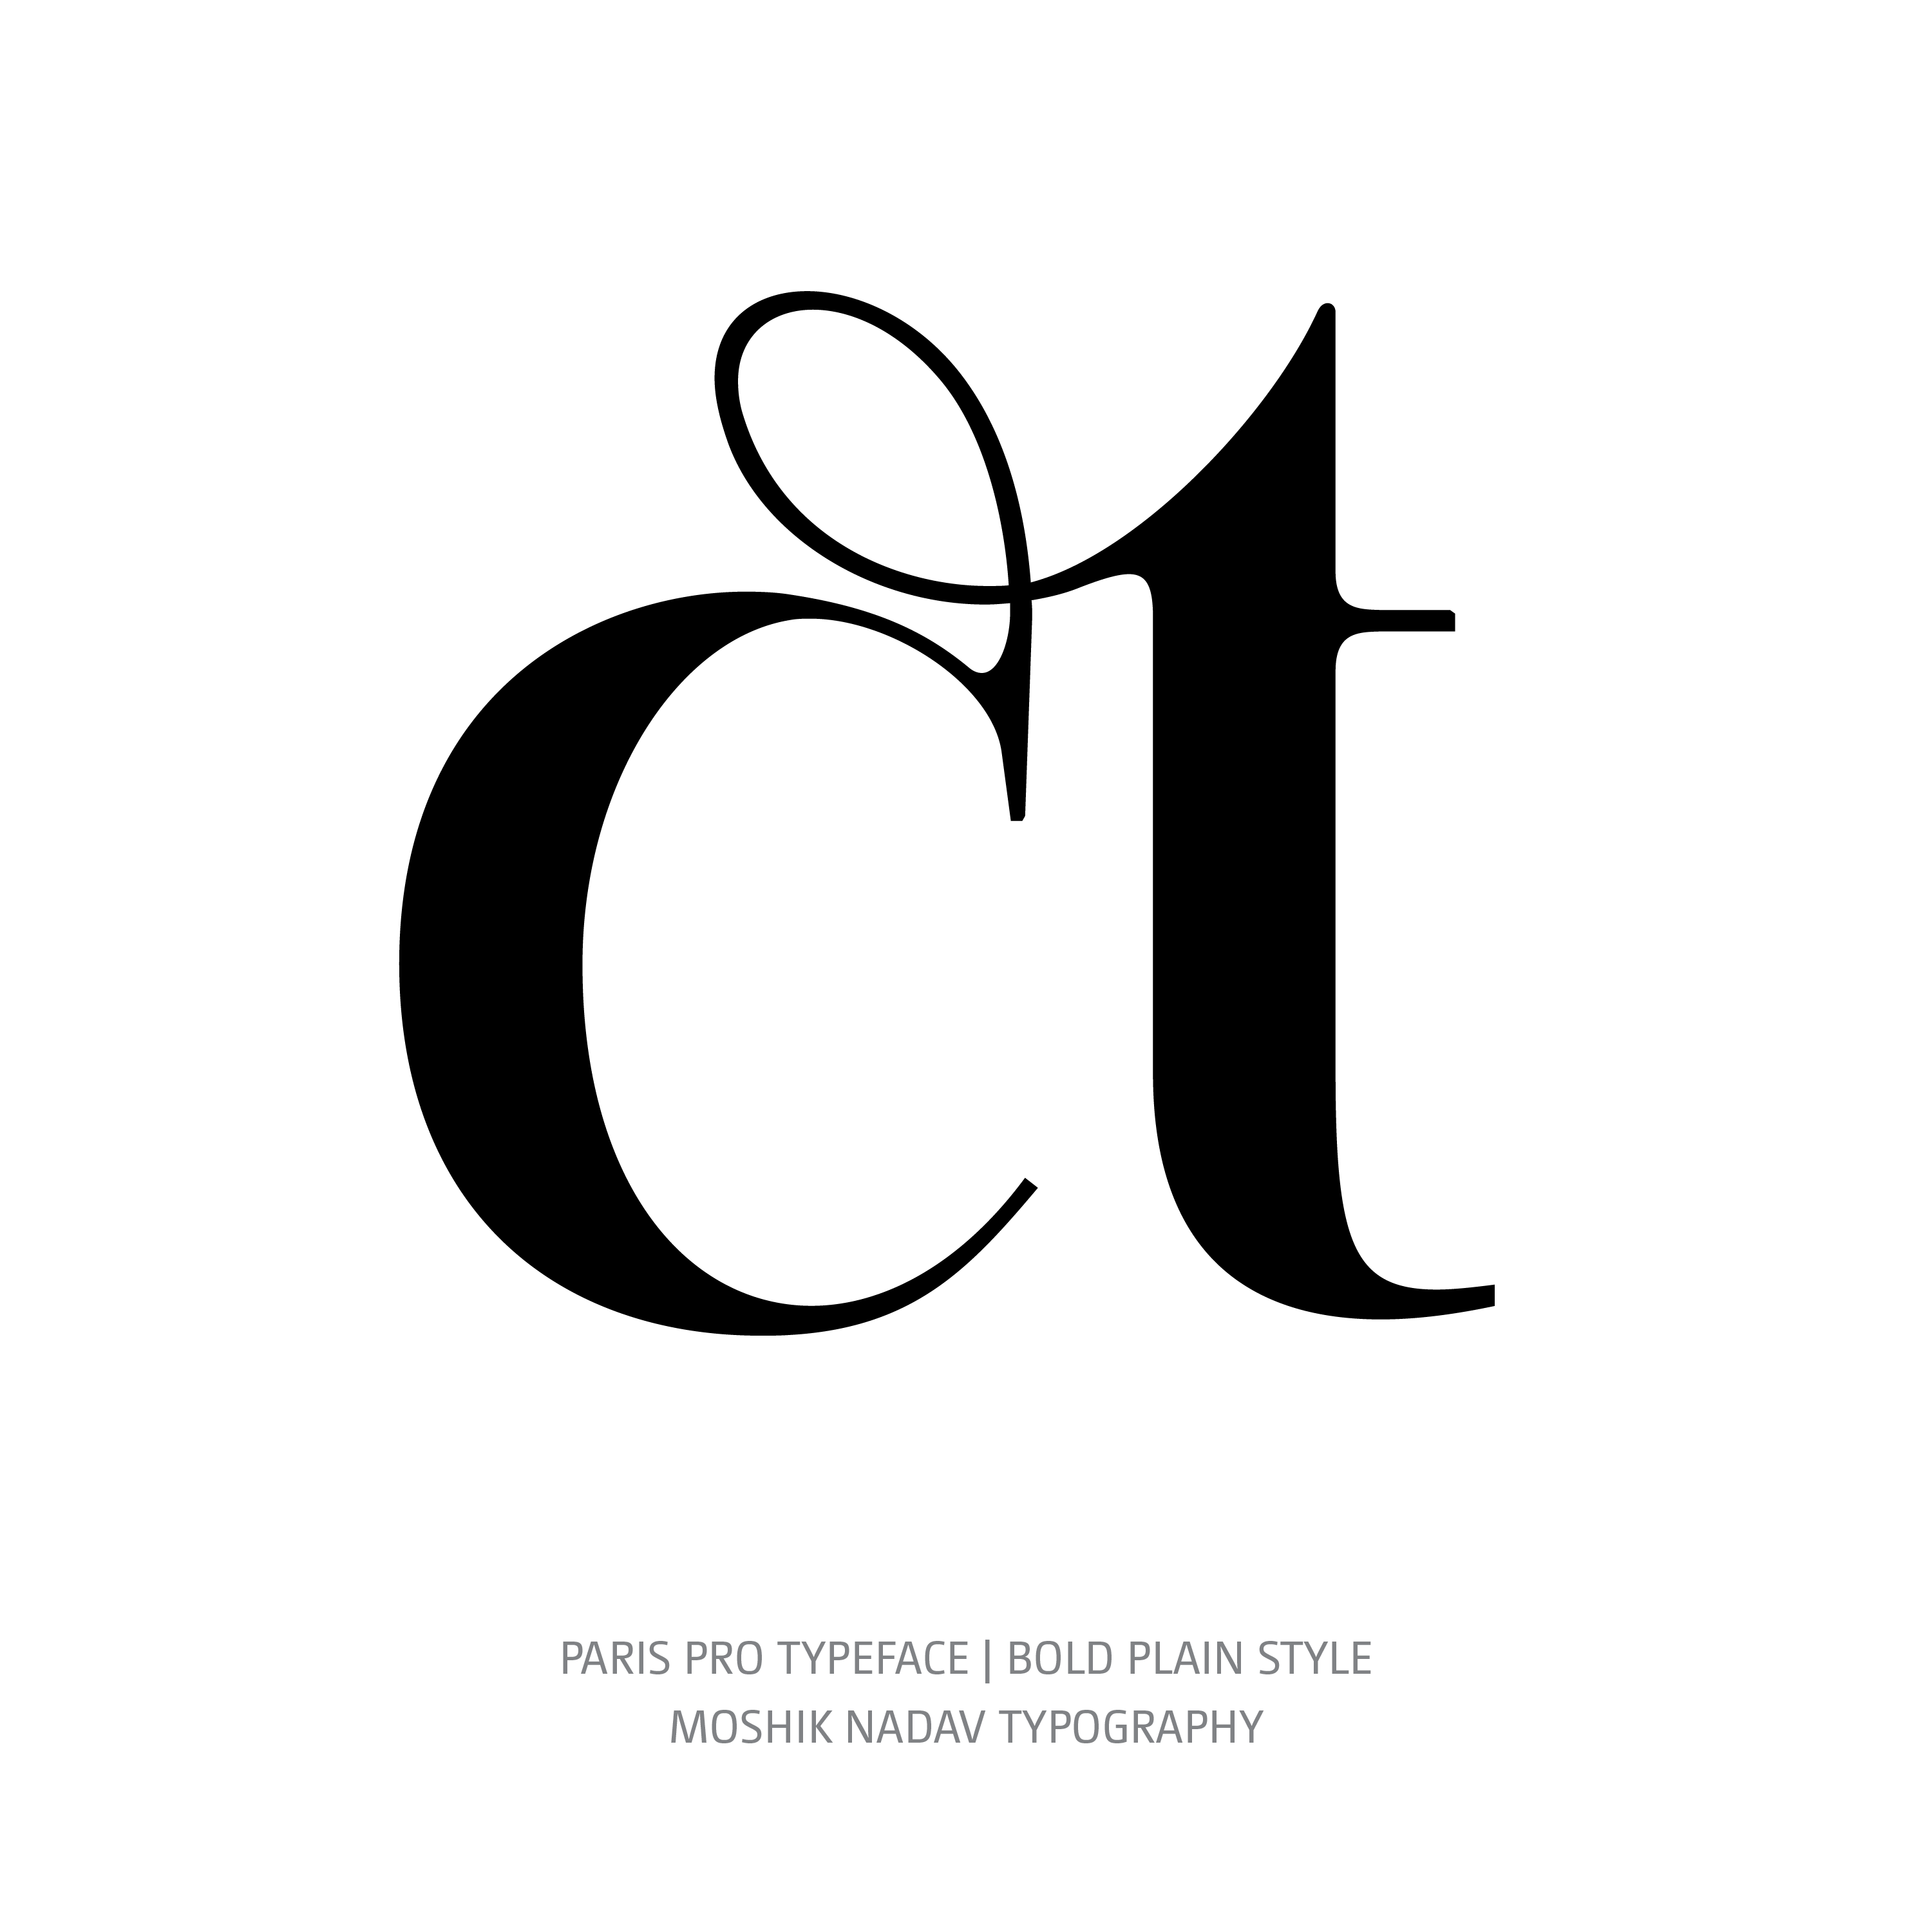 Paris Pro Typeface Bold ct ligature